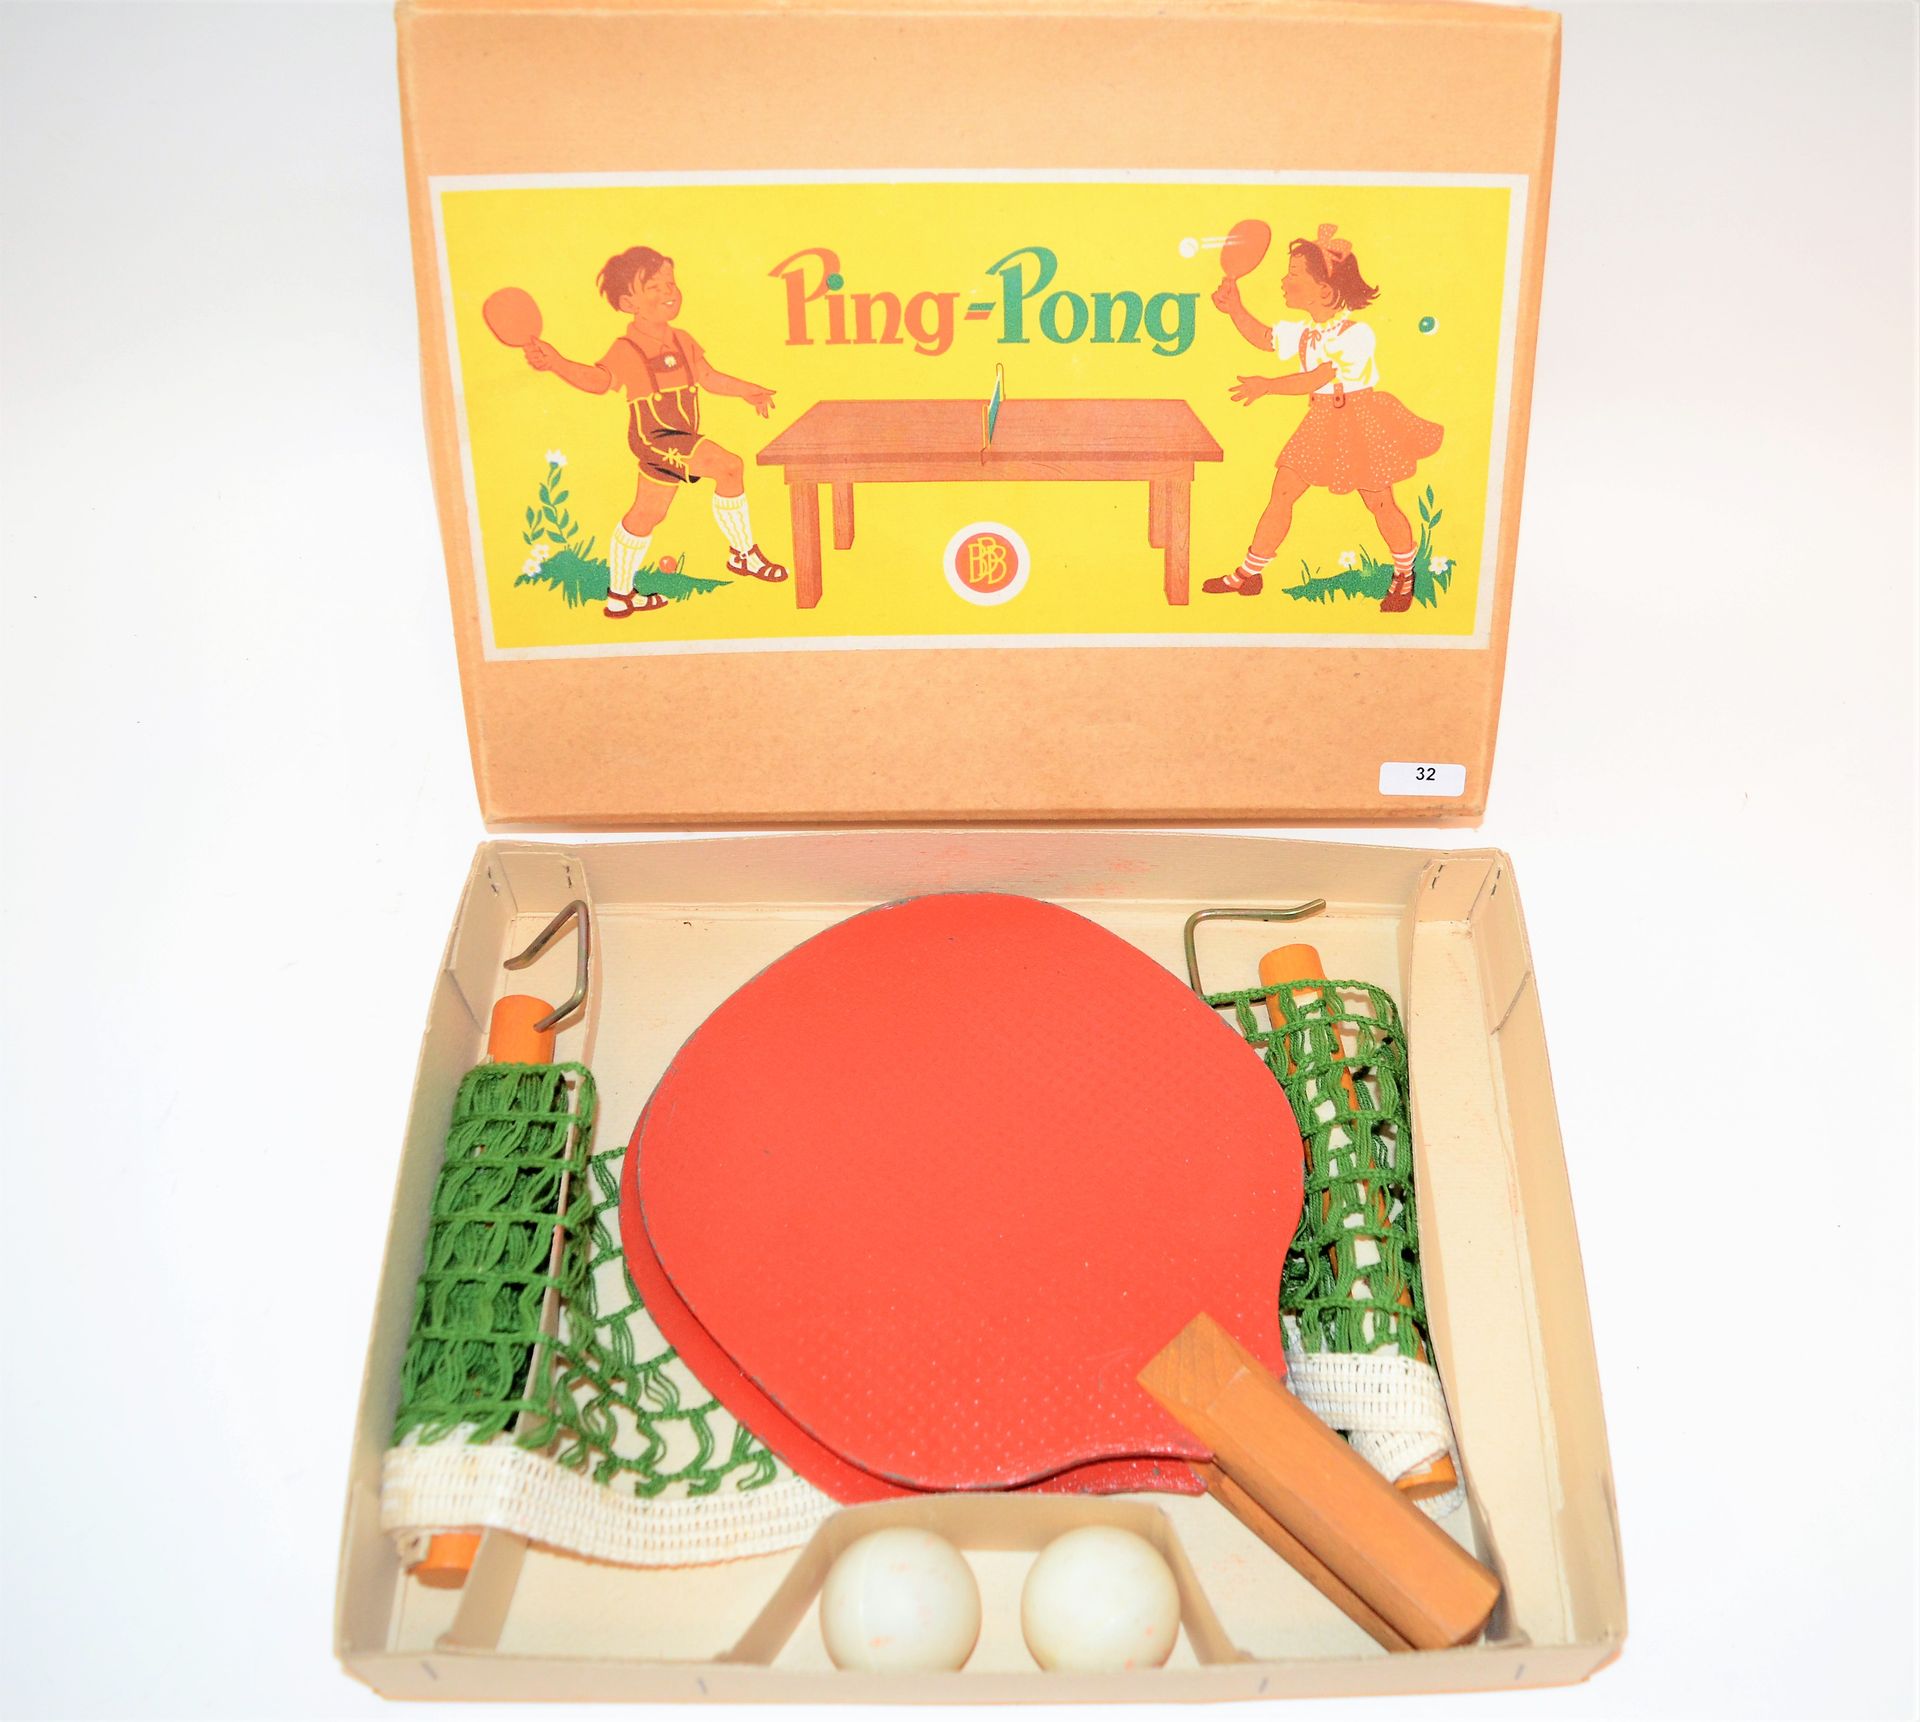 Null Juego de ping-pong en caja, completo (dos raquetas, dos pelotas, red).